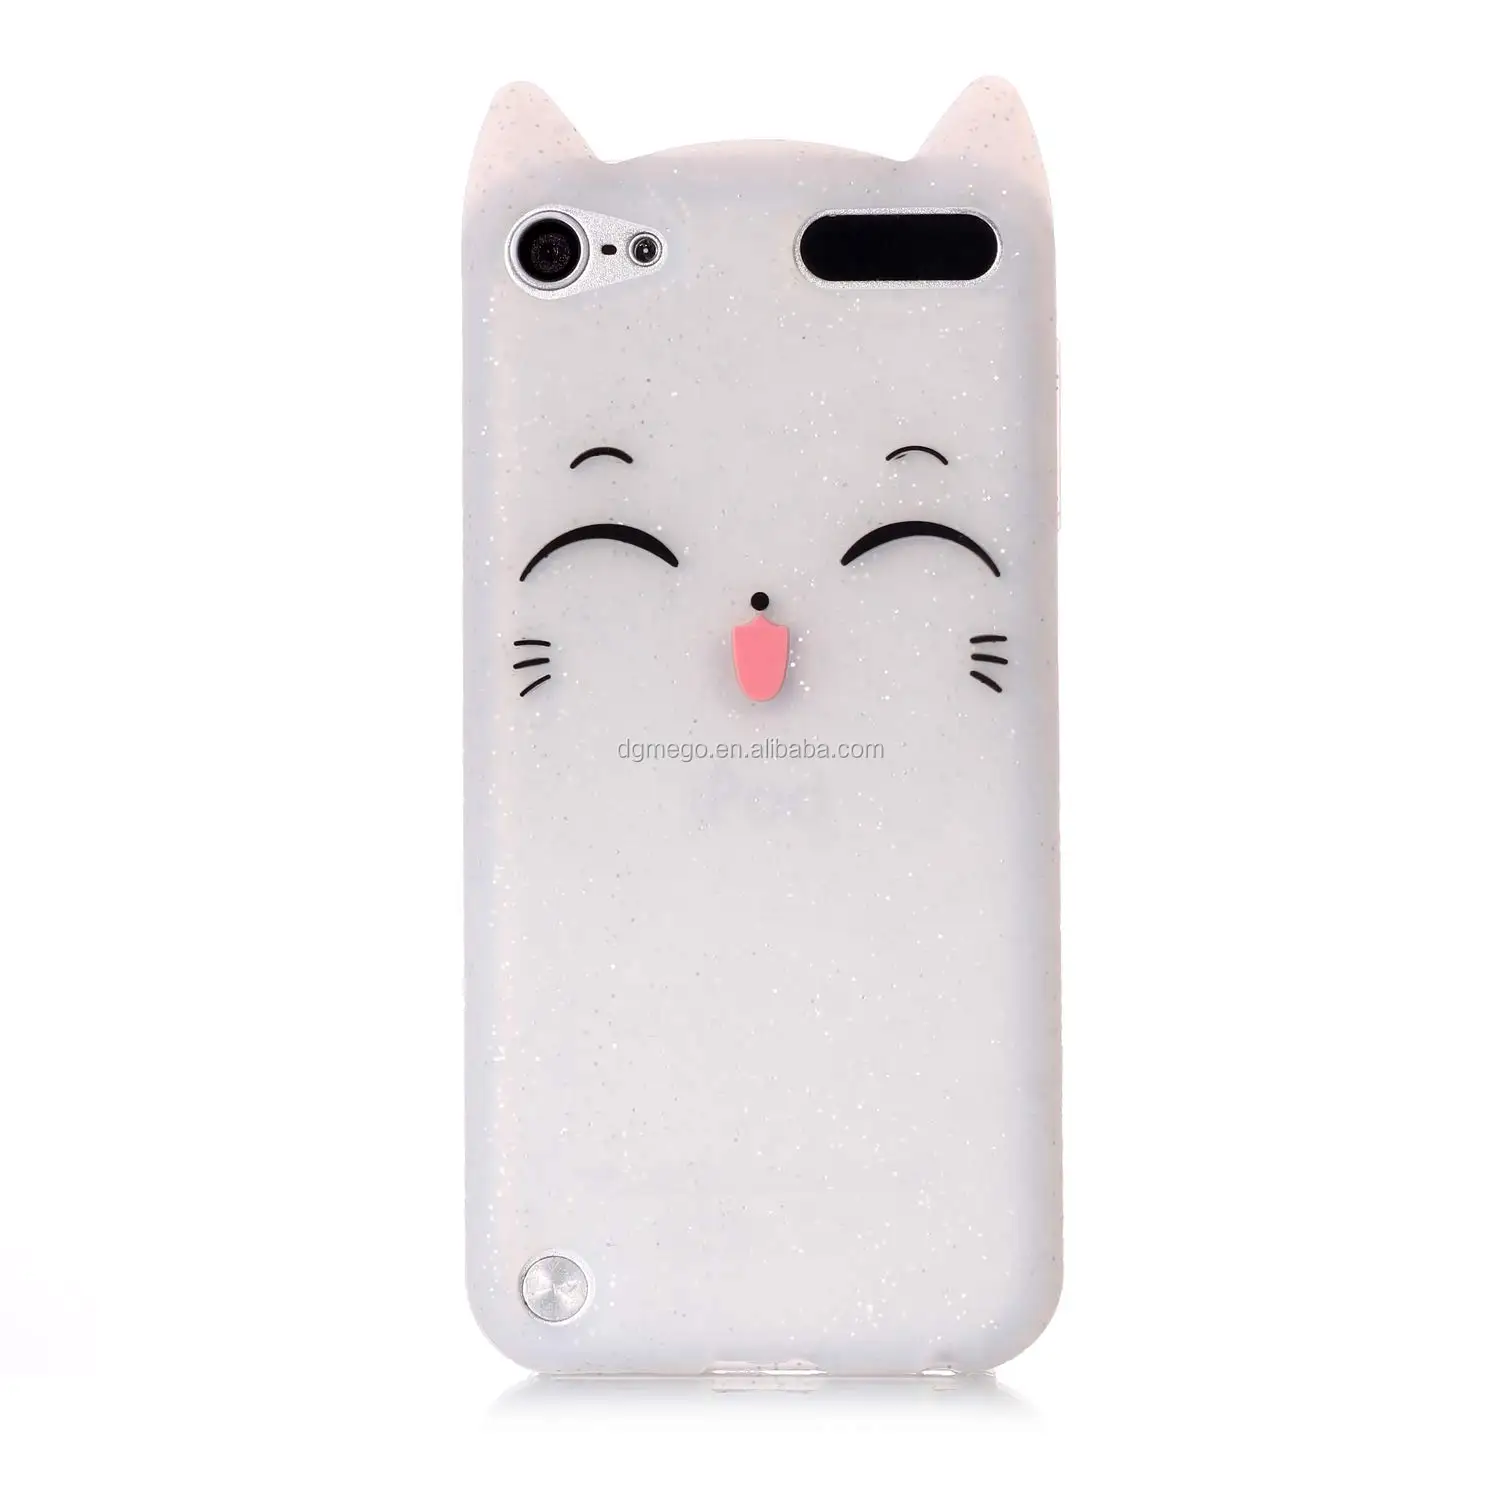 可爱的3d卡通小猫白猫柔软的硅橡胶手机套 适用于ipod Touch 5代 Ipod Buy 硅手机壳 可爱手机壳 时尚硅胶手机壳product On